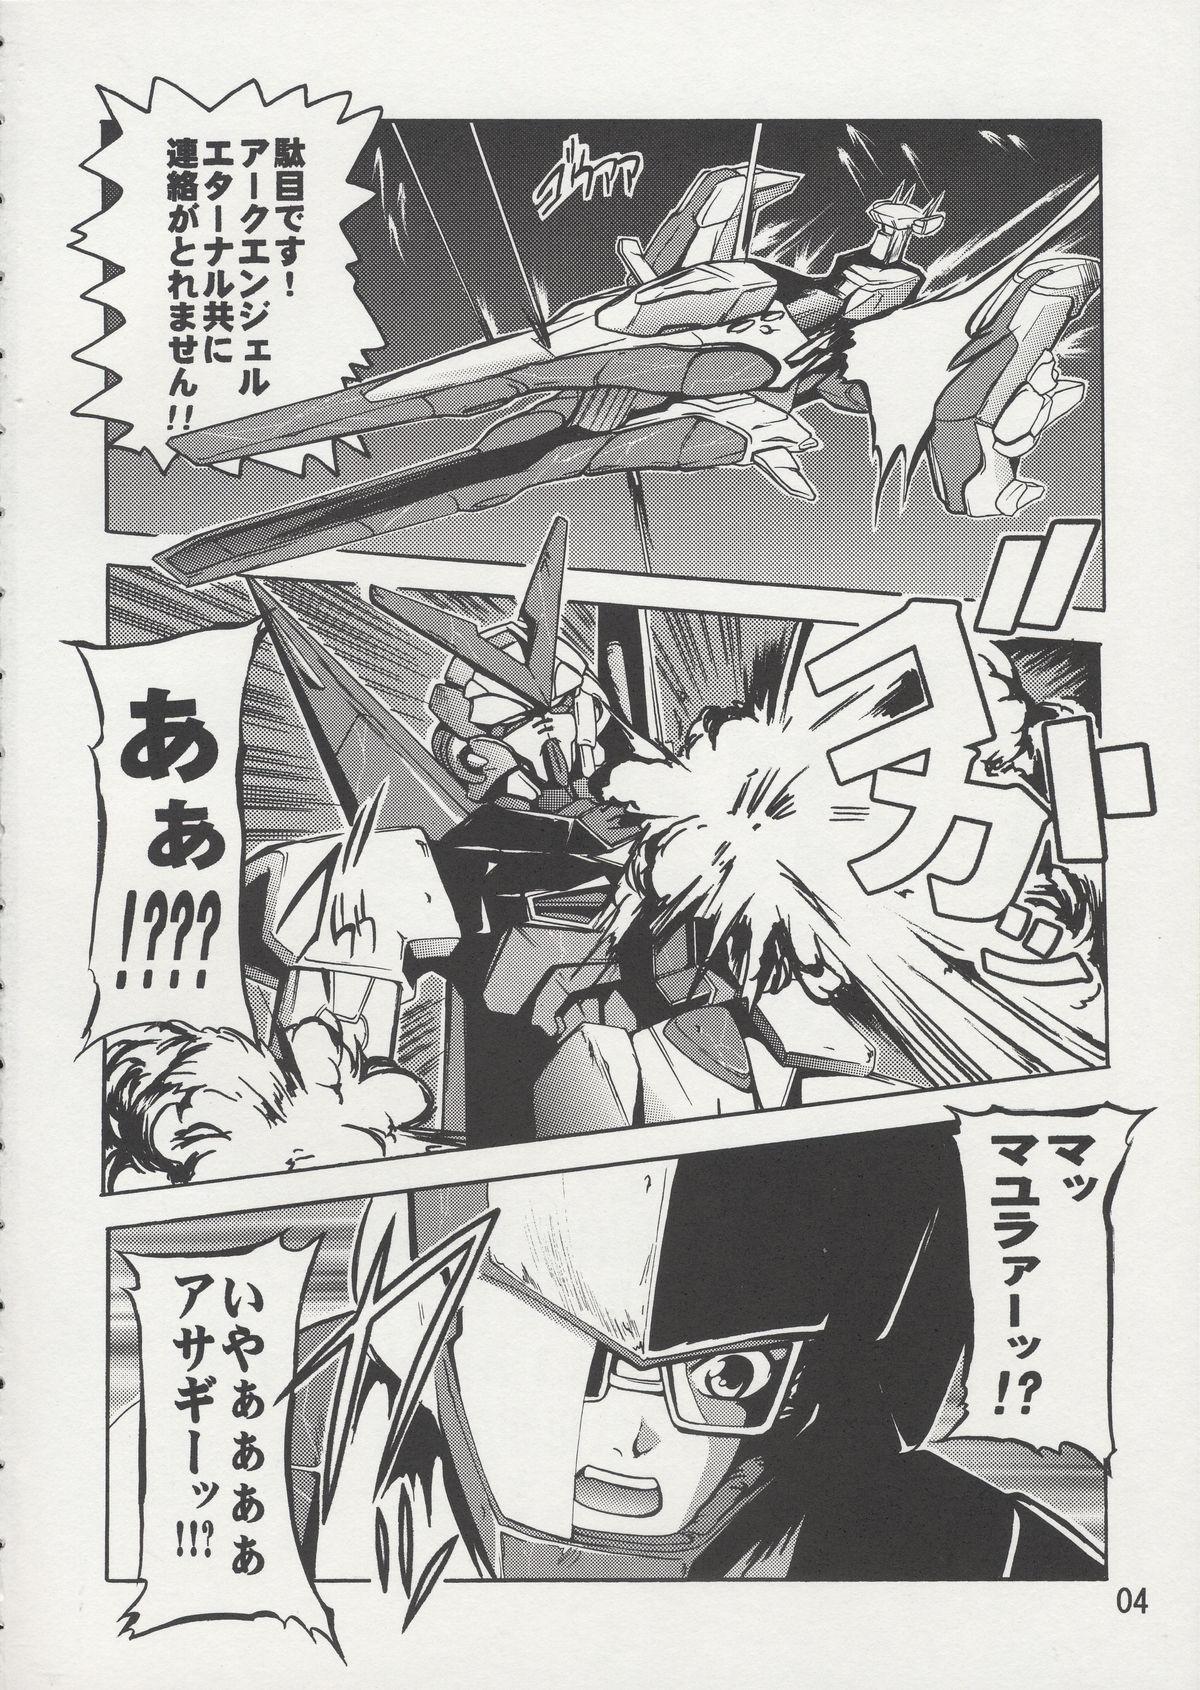 Fun Cagalli Mark Three | Cagalli Ma Ku Suri - Gundam seed Screaming - Page 3